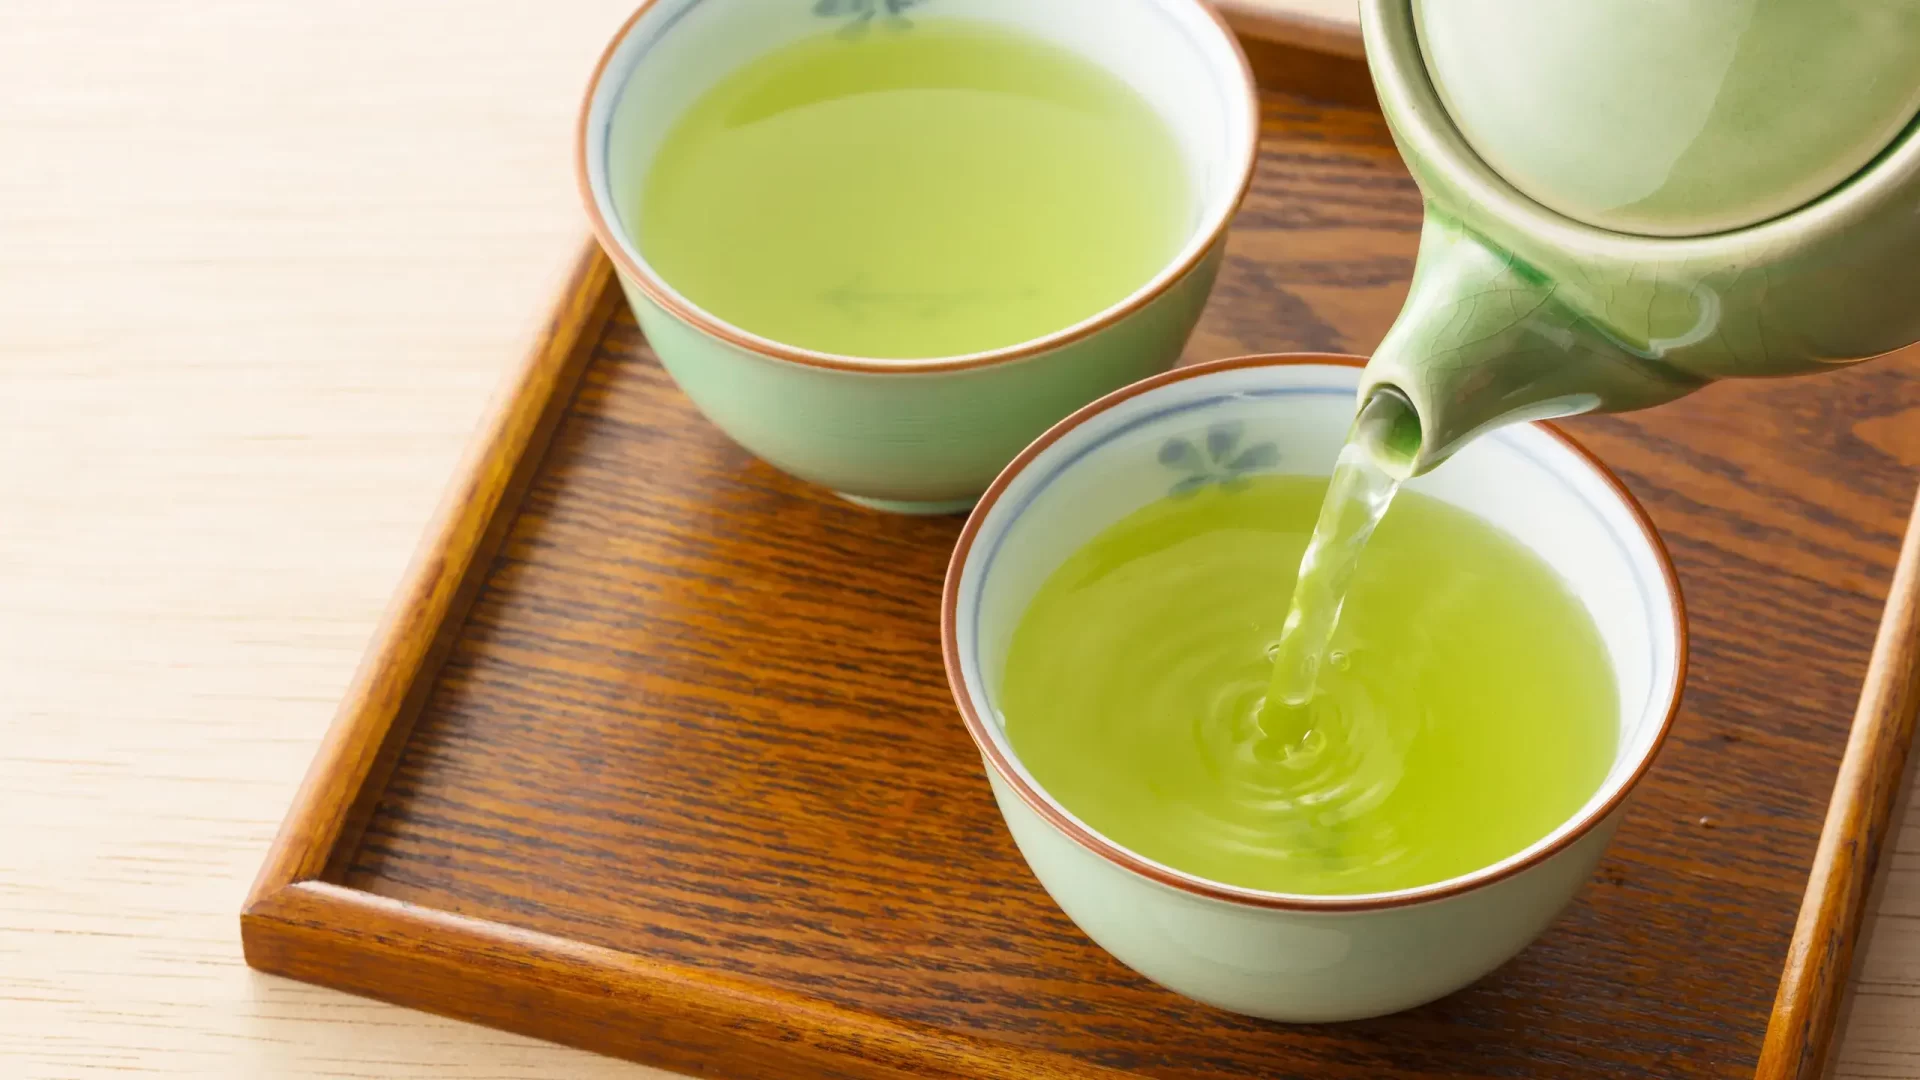 آشنایی با خواص چای سبز + تاثیر چای سبز برای لاغری